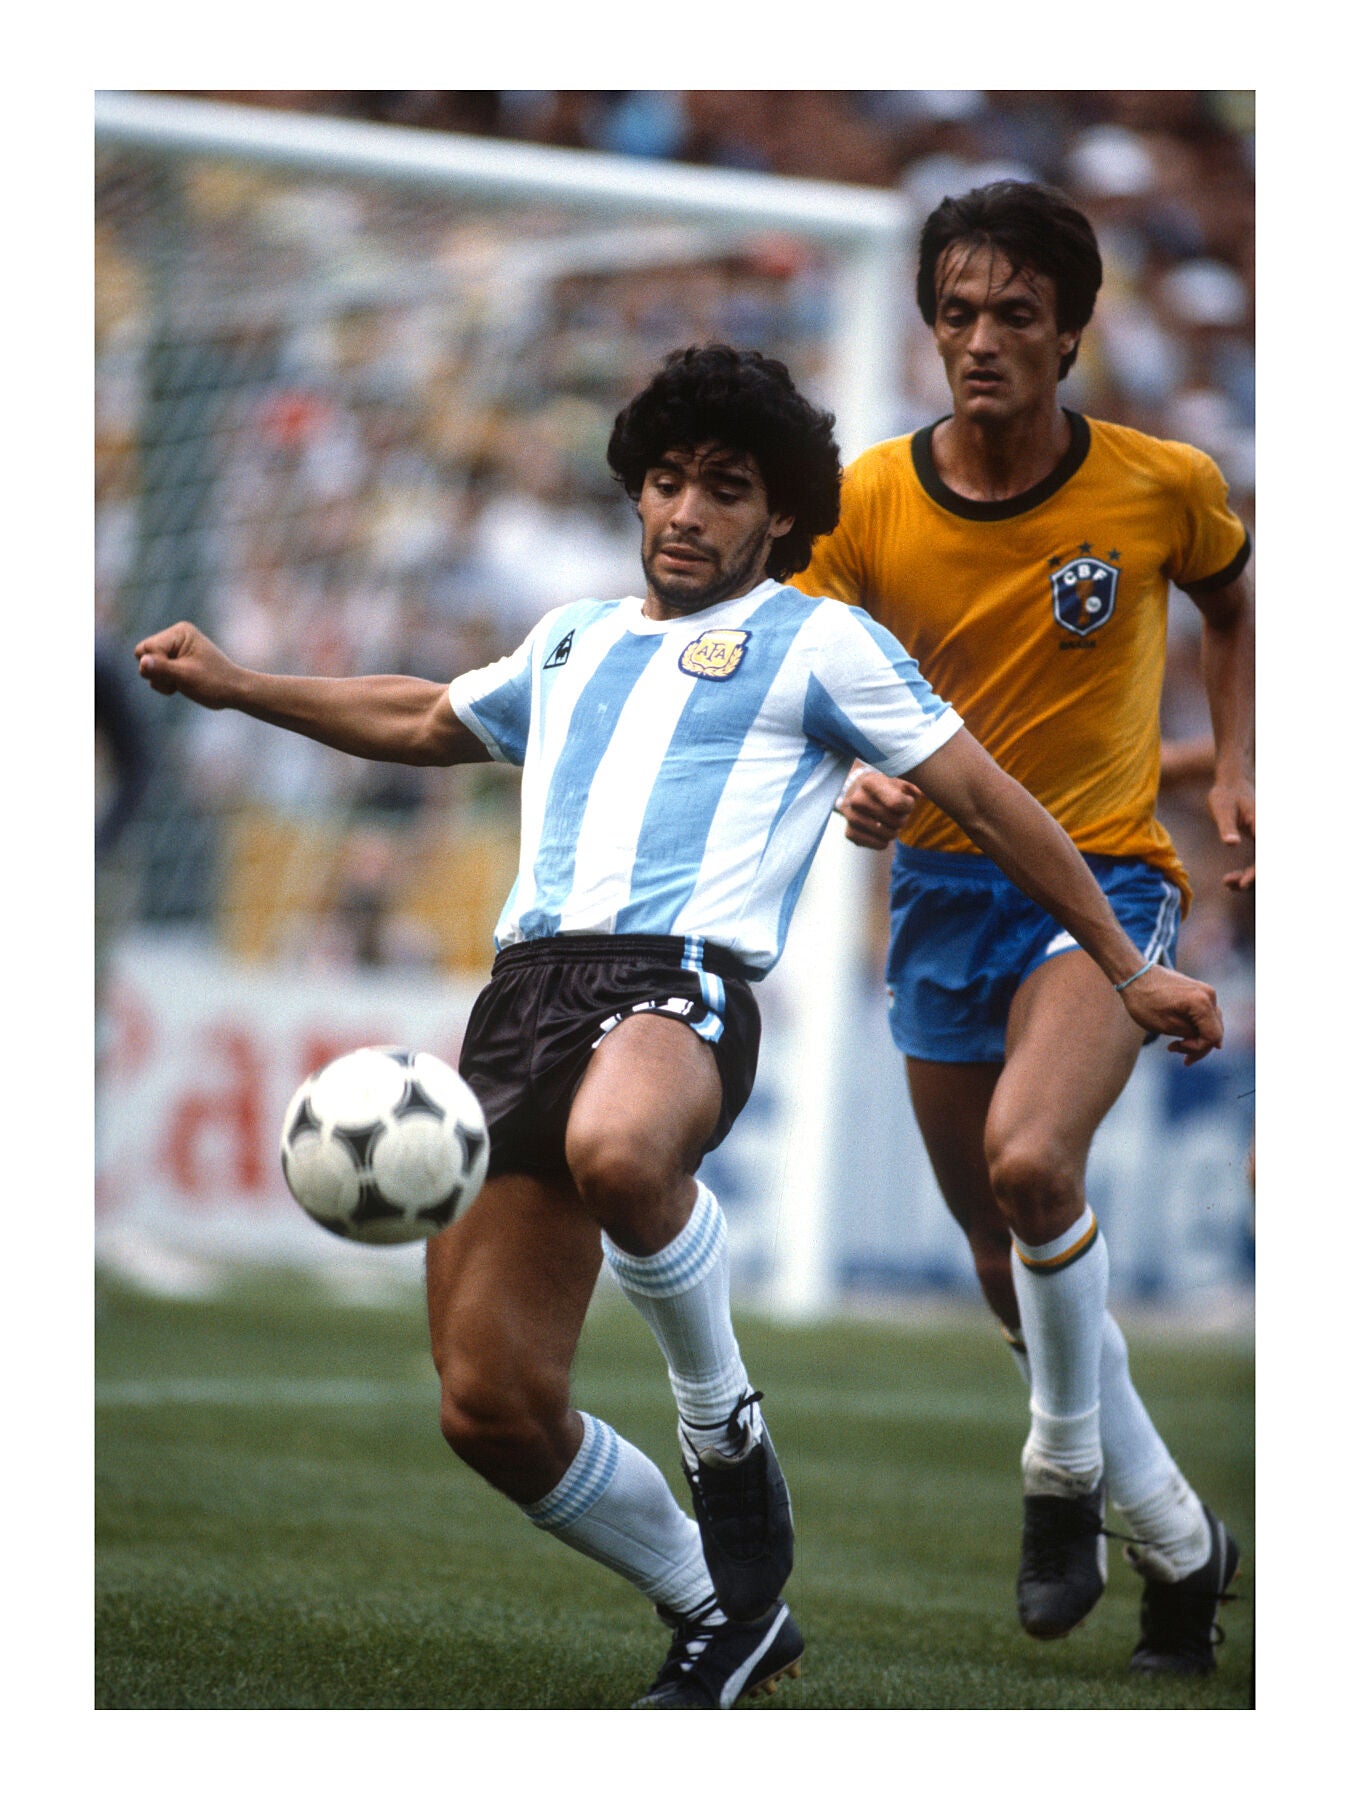 Maradona, forever #10